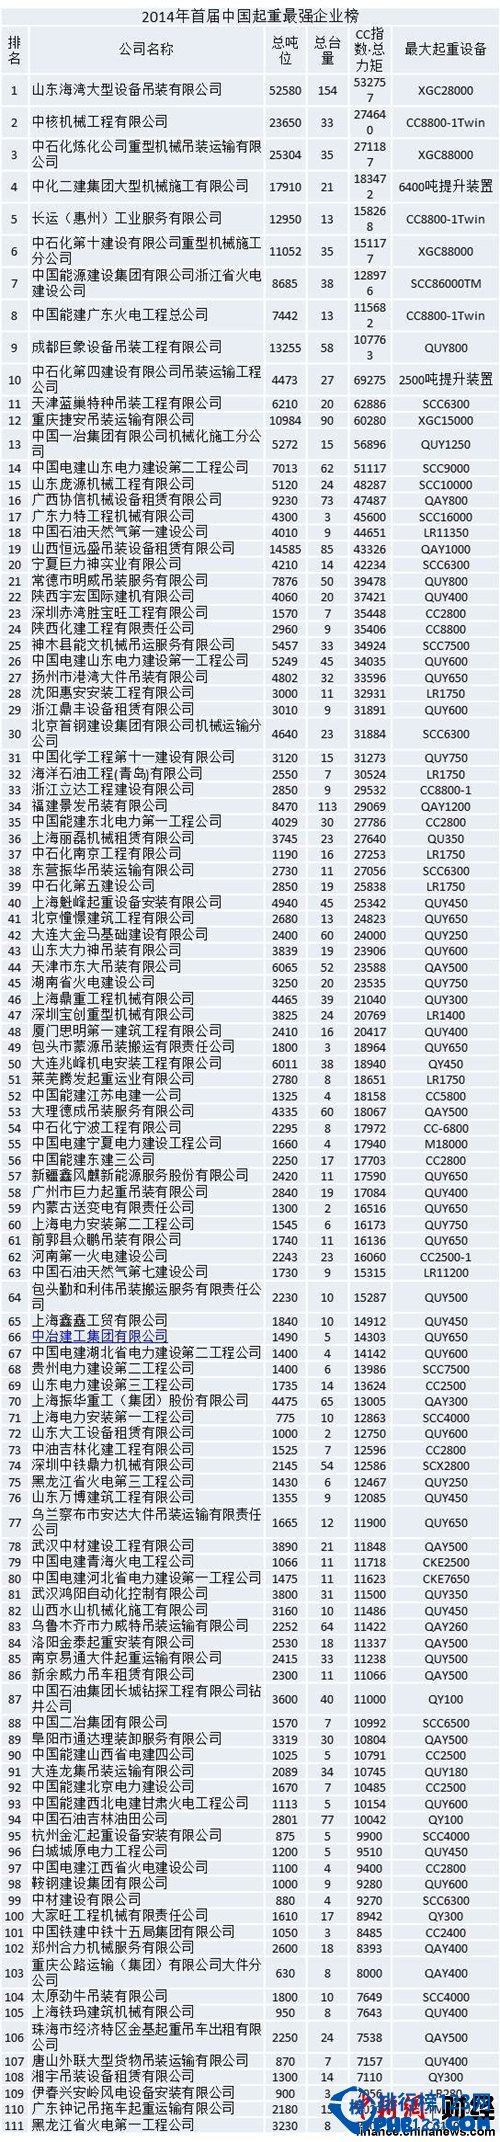 2014CC70中國起重企業排行榜